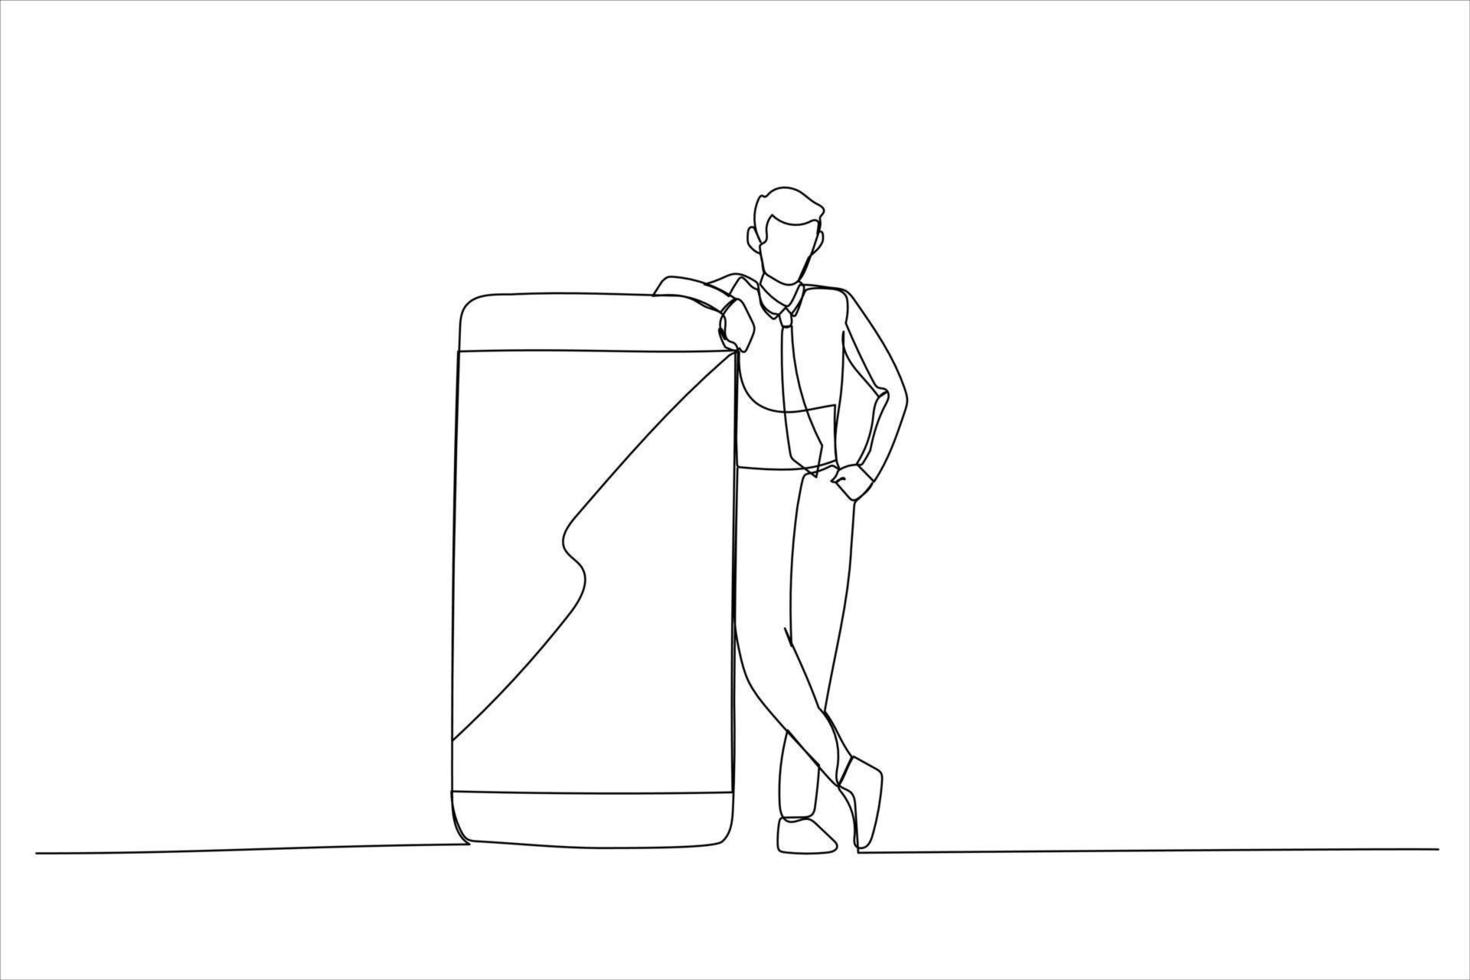 dibujo de un tipo casual parado y apoyado en un enorme teléfono celular gigante con una plantilla de pantalla blanca vacía. arte de línea continua única vector